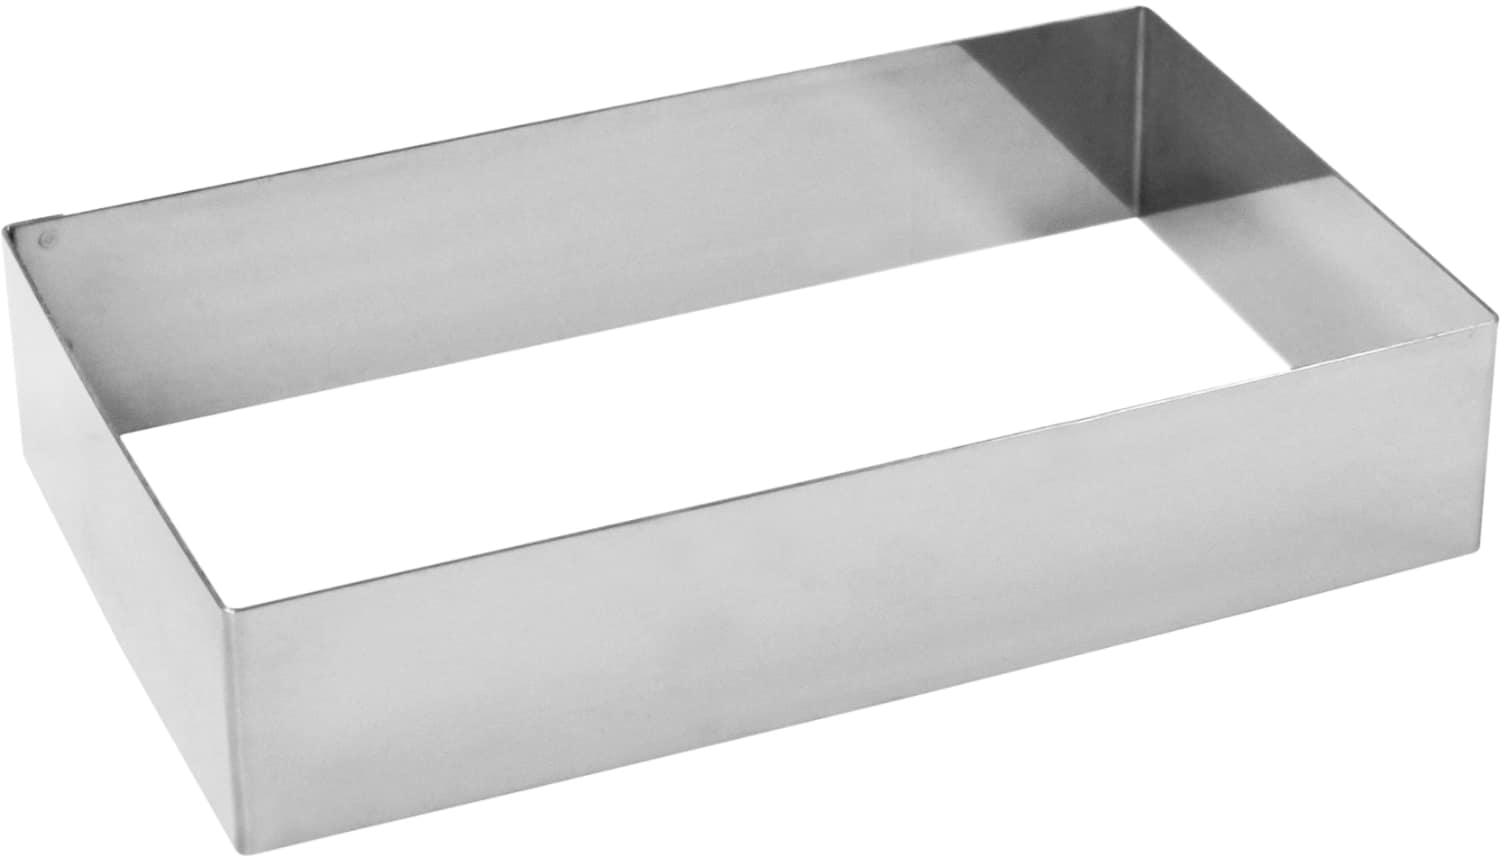 Tart ring "rectanglar" stainless steel 155380